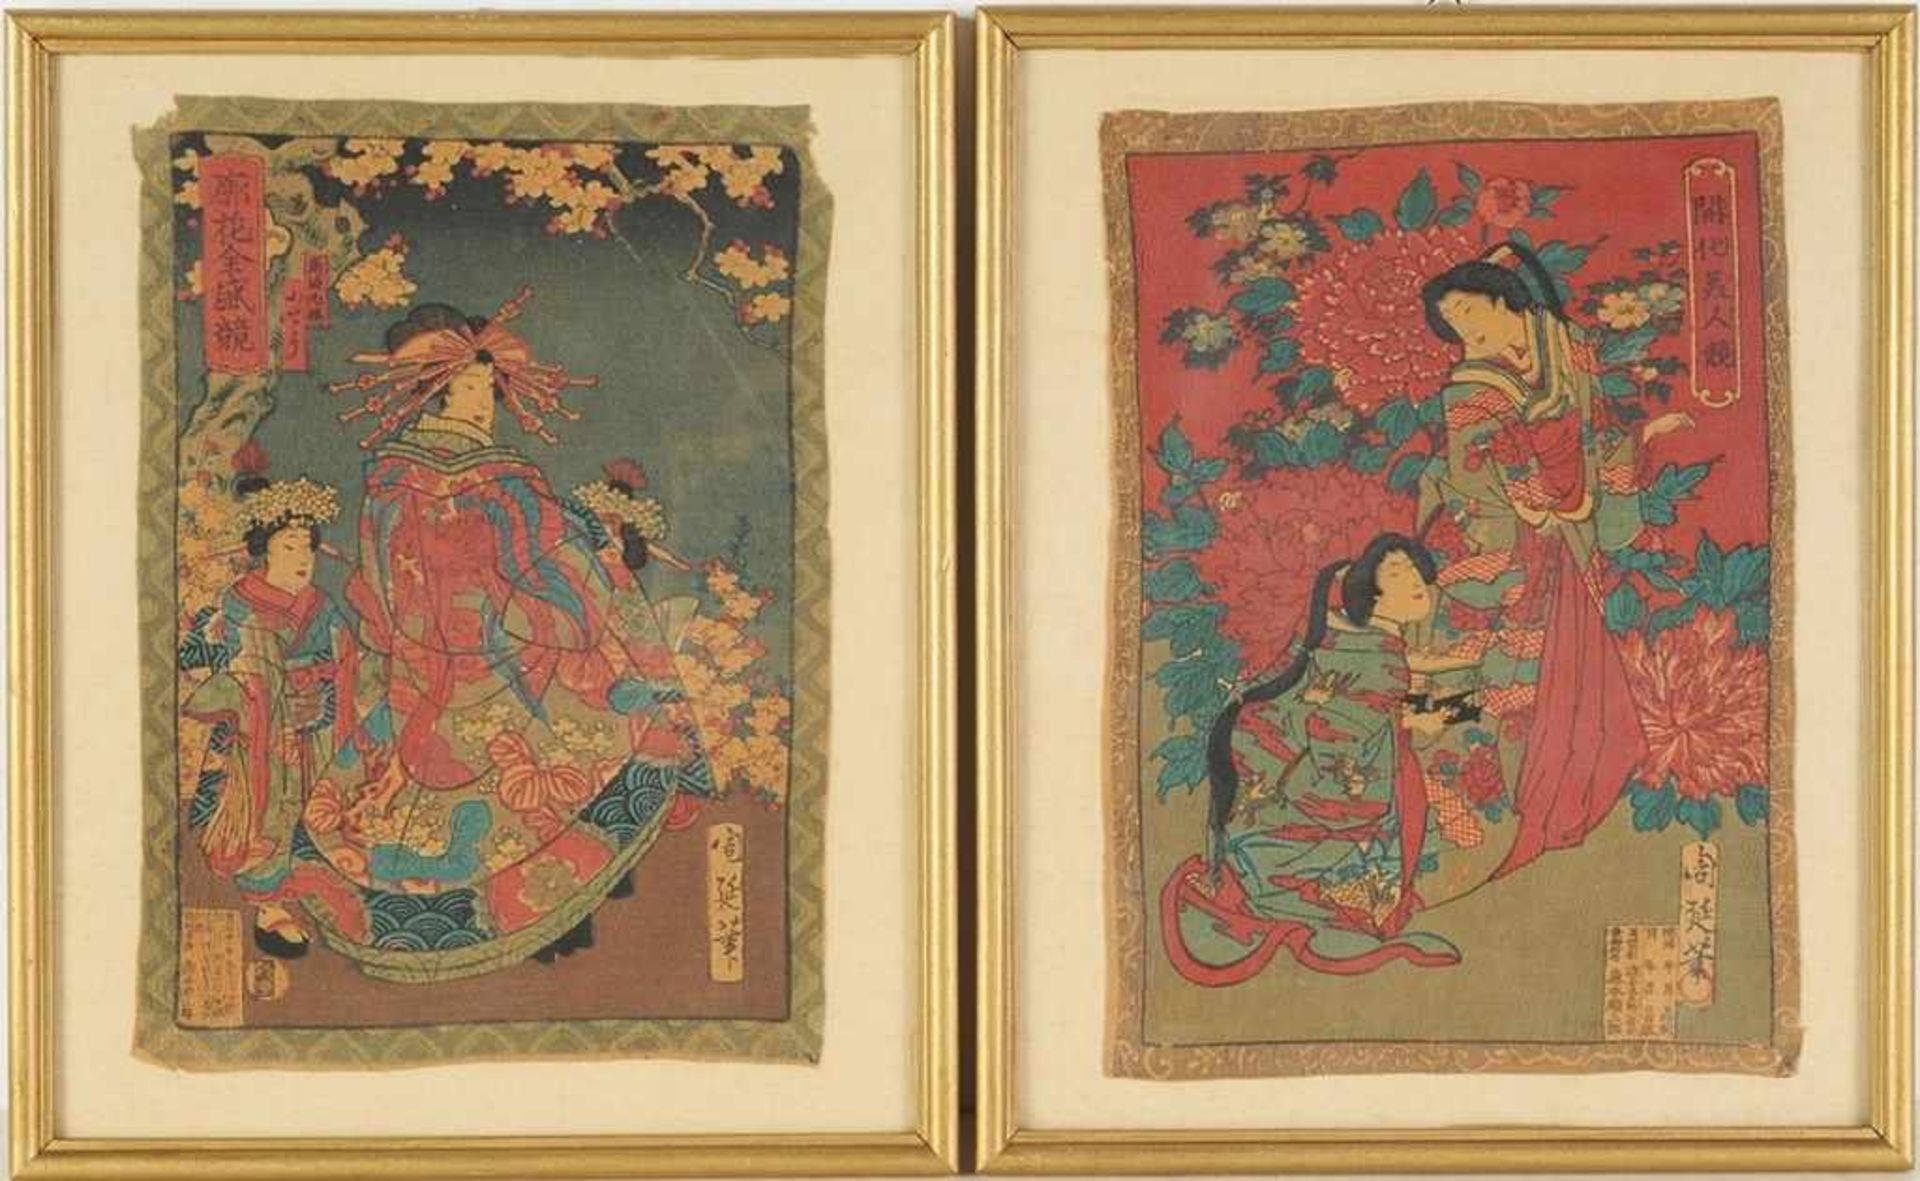 Chikanobu, Toyohara(auch Chikanobu, Yoshu/ Chikanobu, Hashimoto) (Takada 1838 - 1912) 2 Bl.